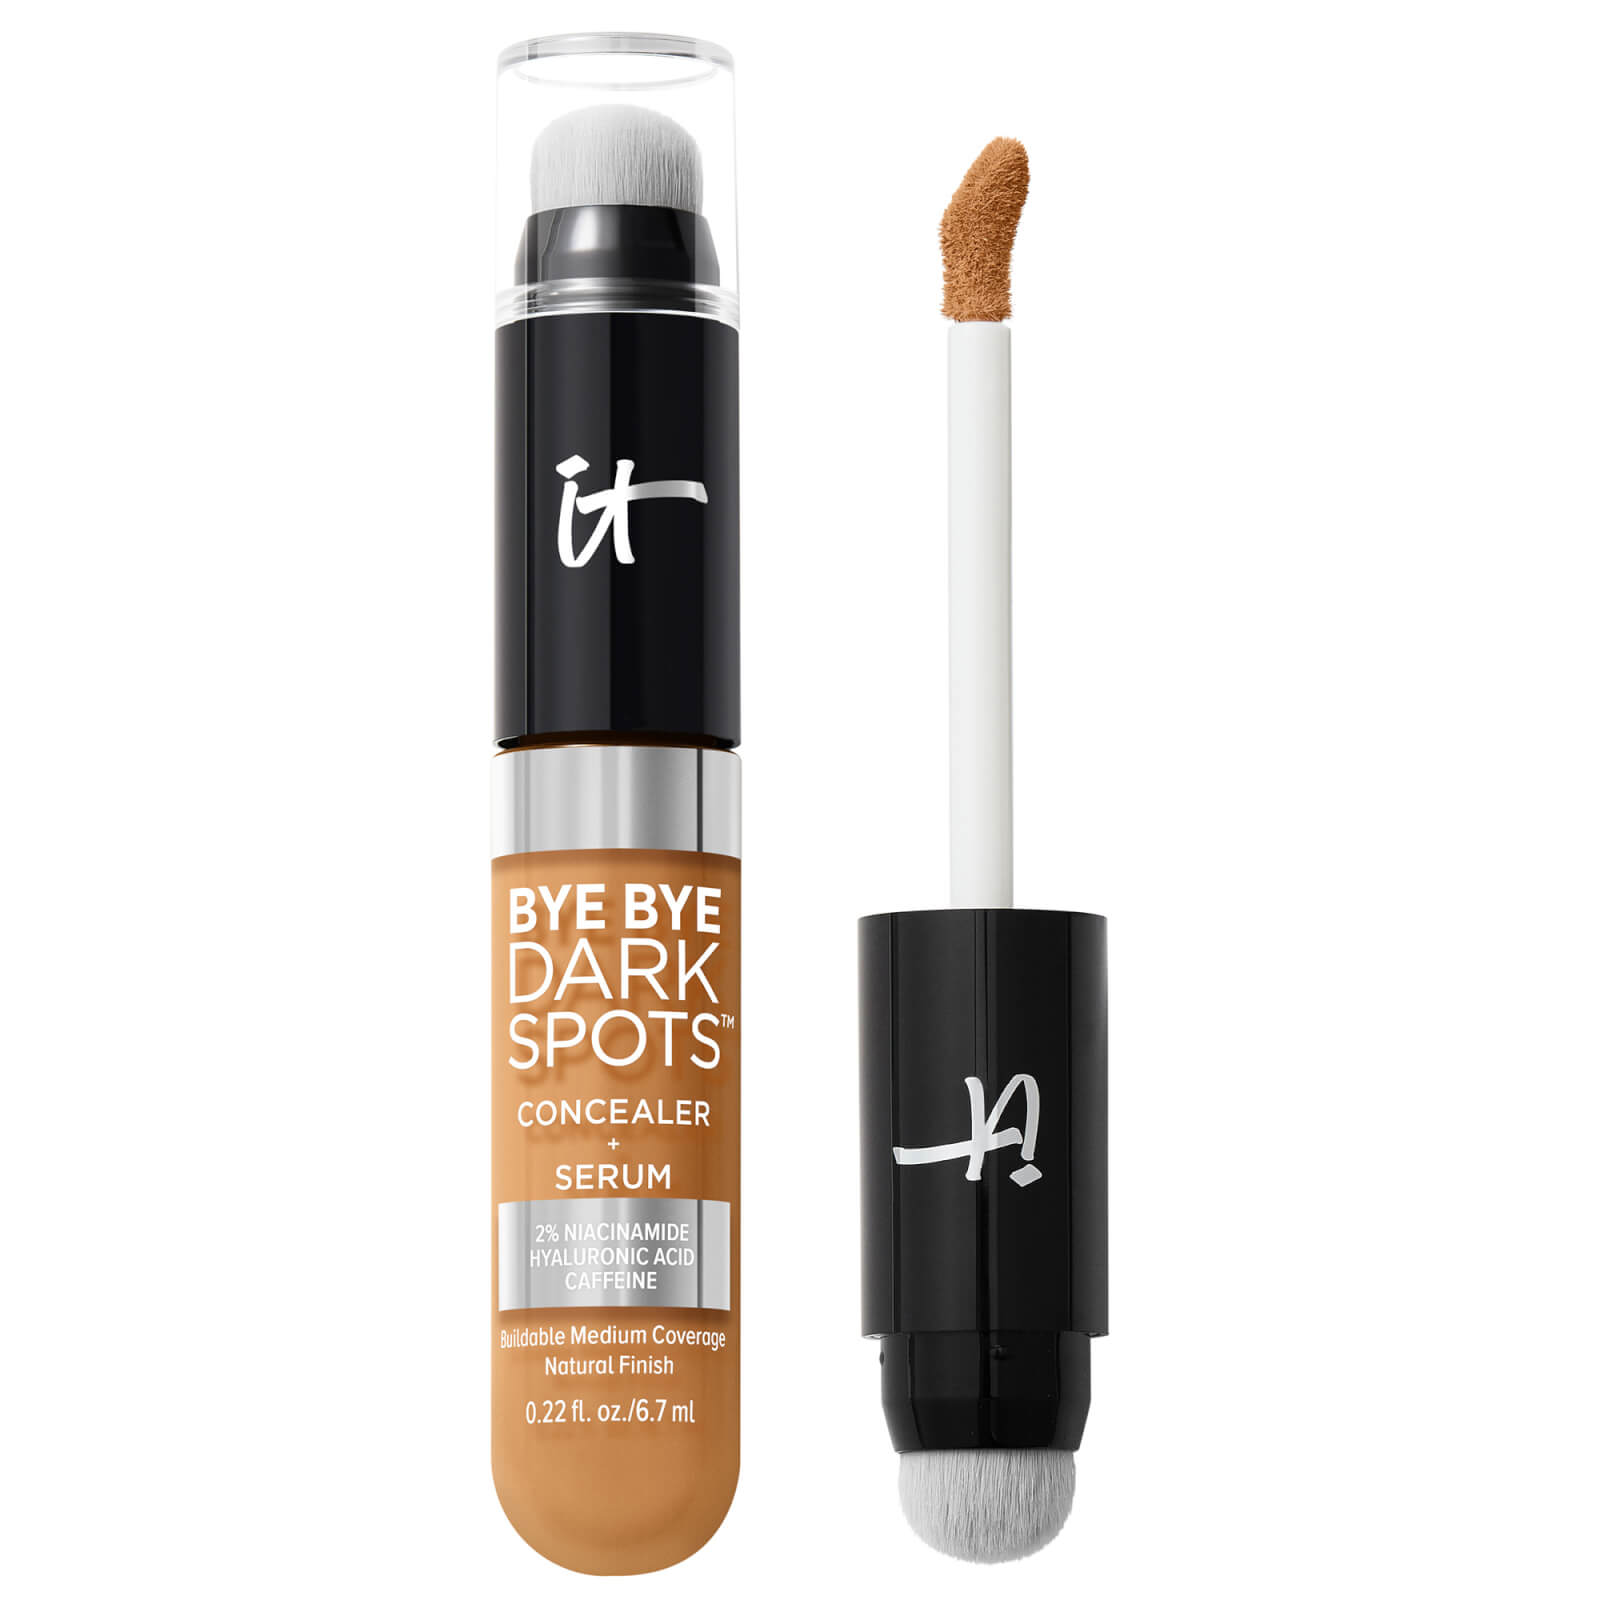 IT Cosmetics Bye Bye Dark Spot Concealer 33g (Various Shades) - Tan Neutral 42